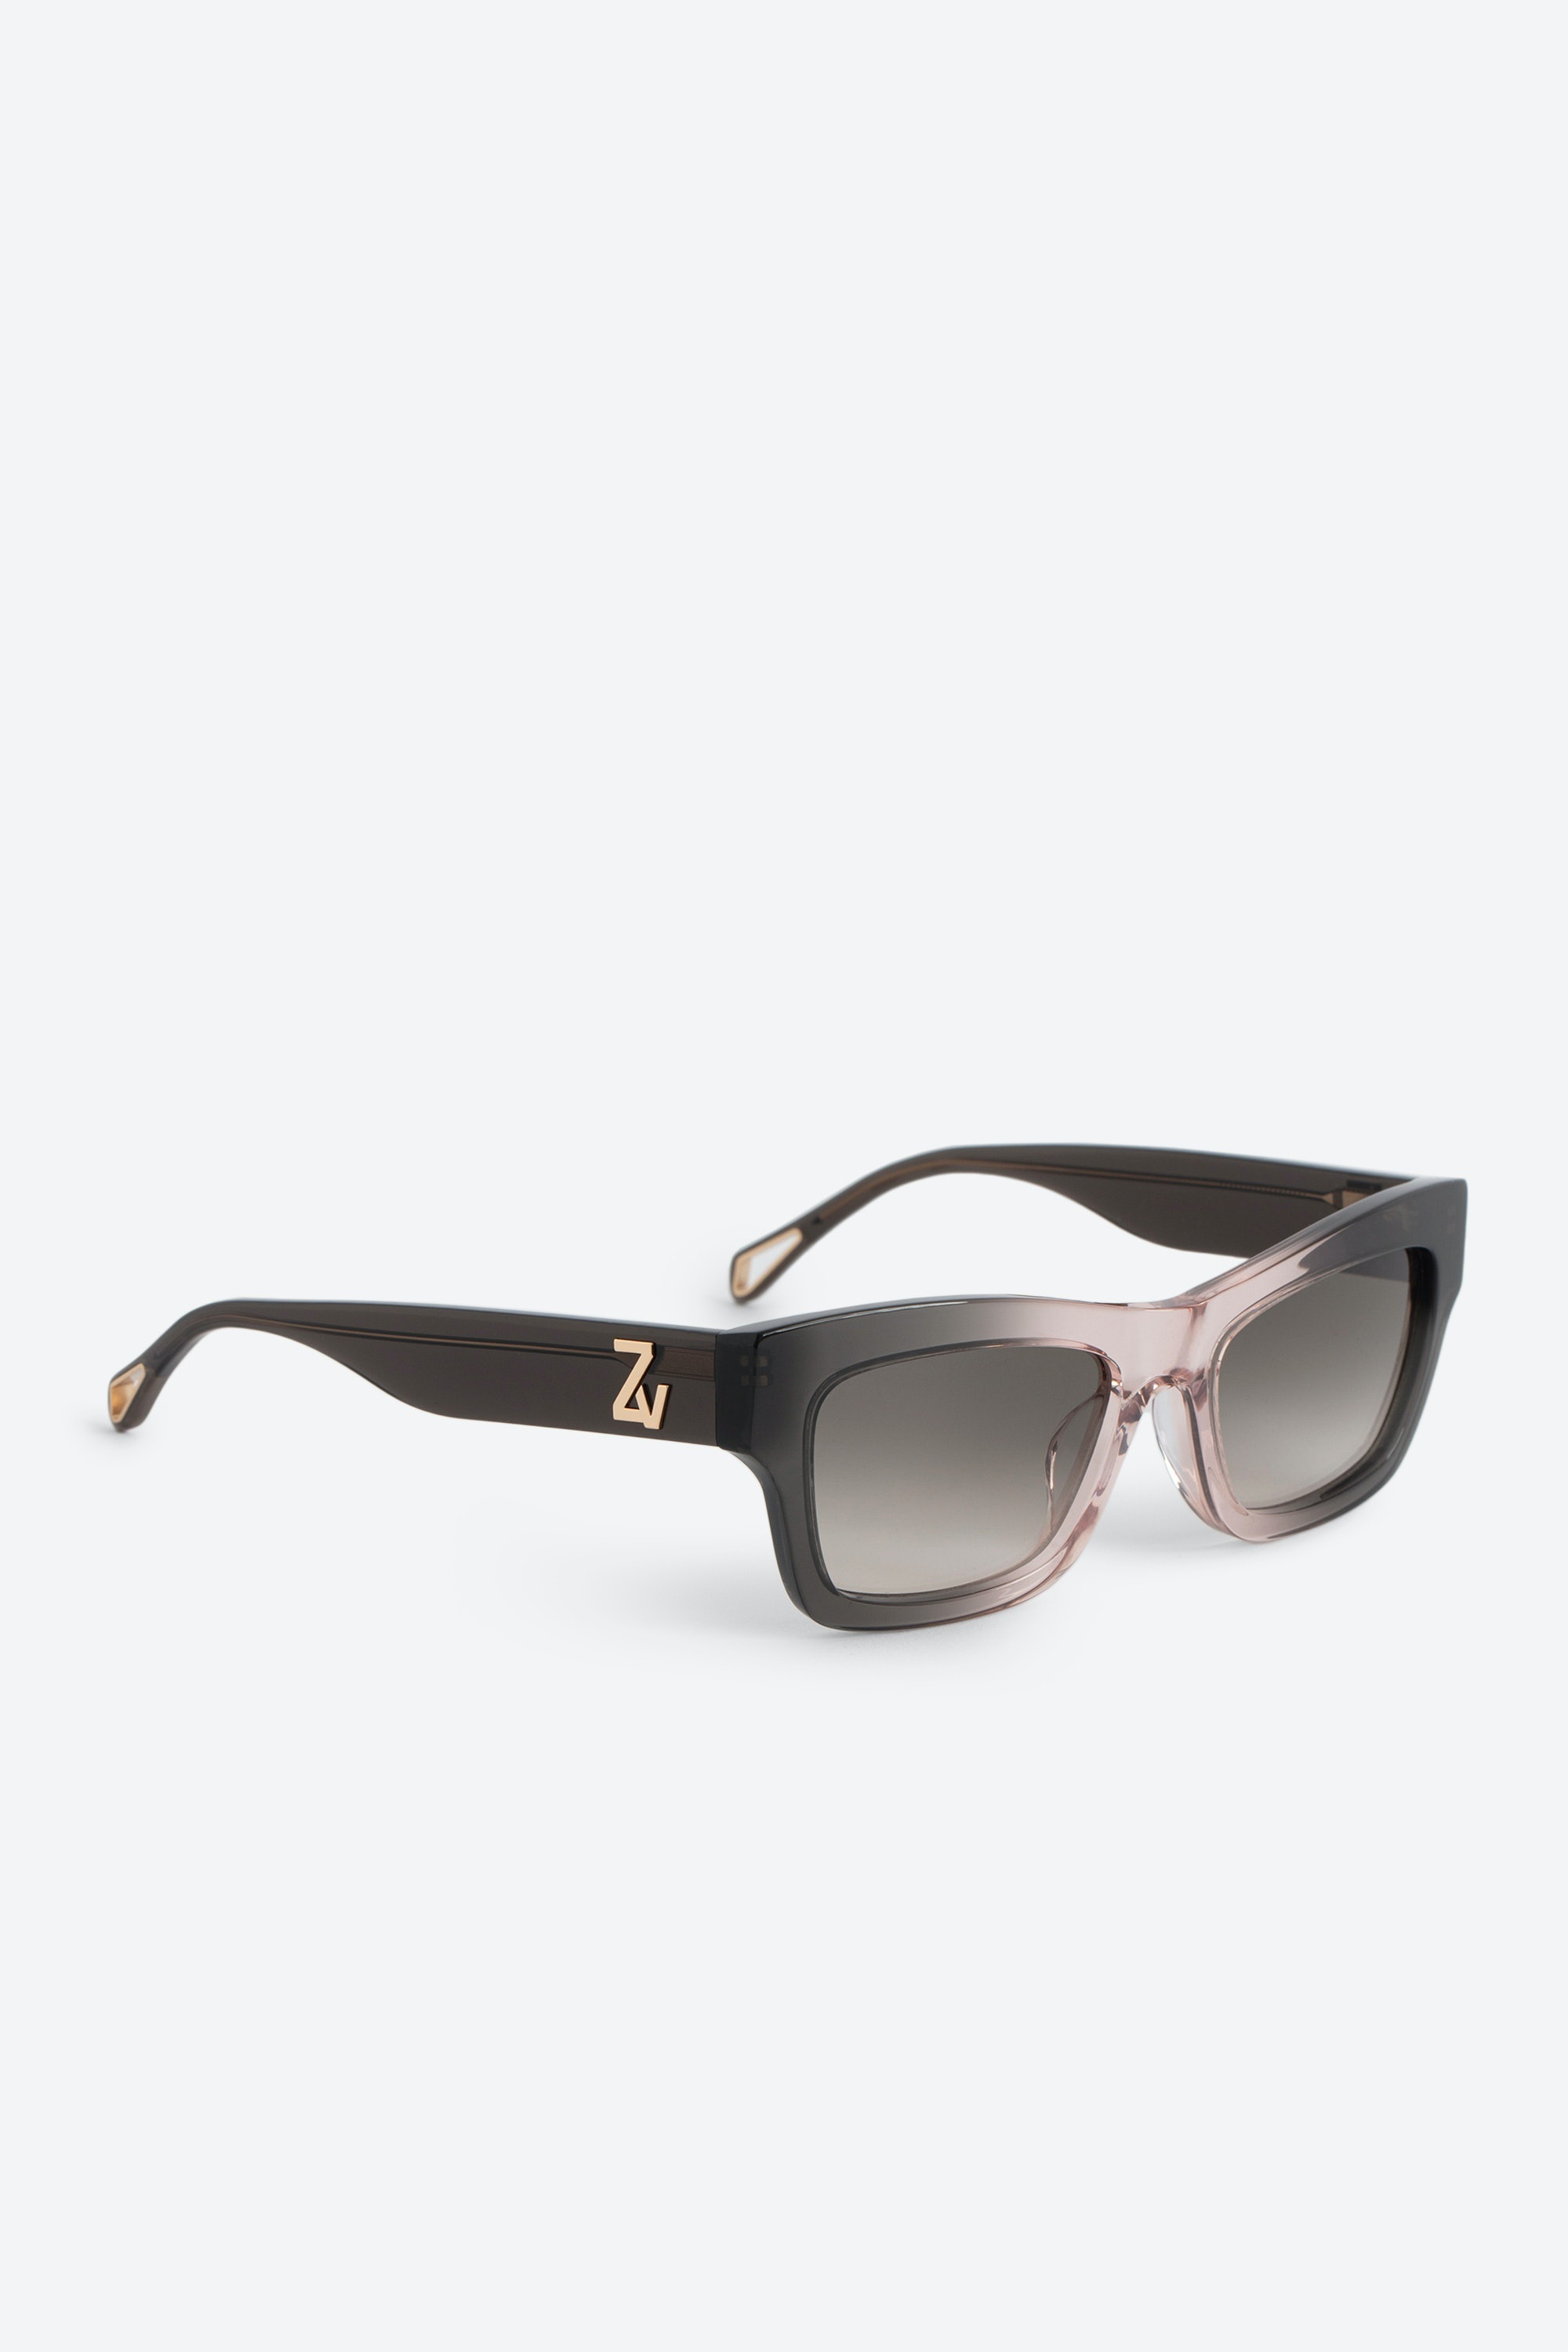 ZV23H1 Sunglasses - 1